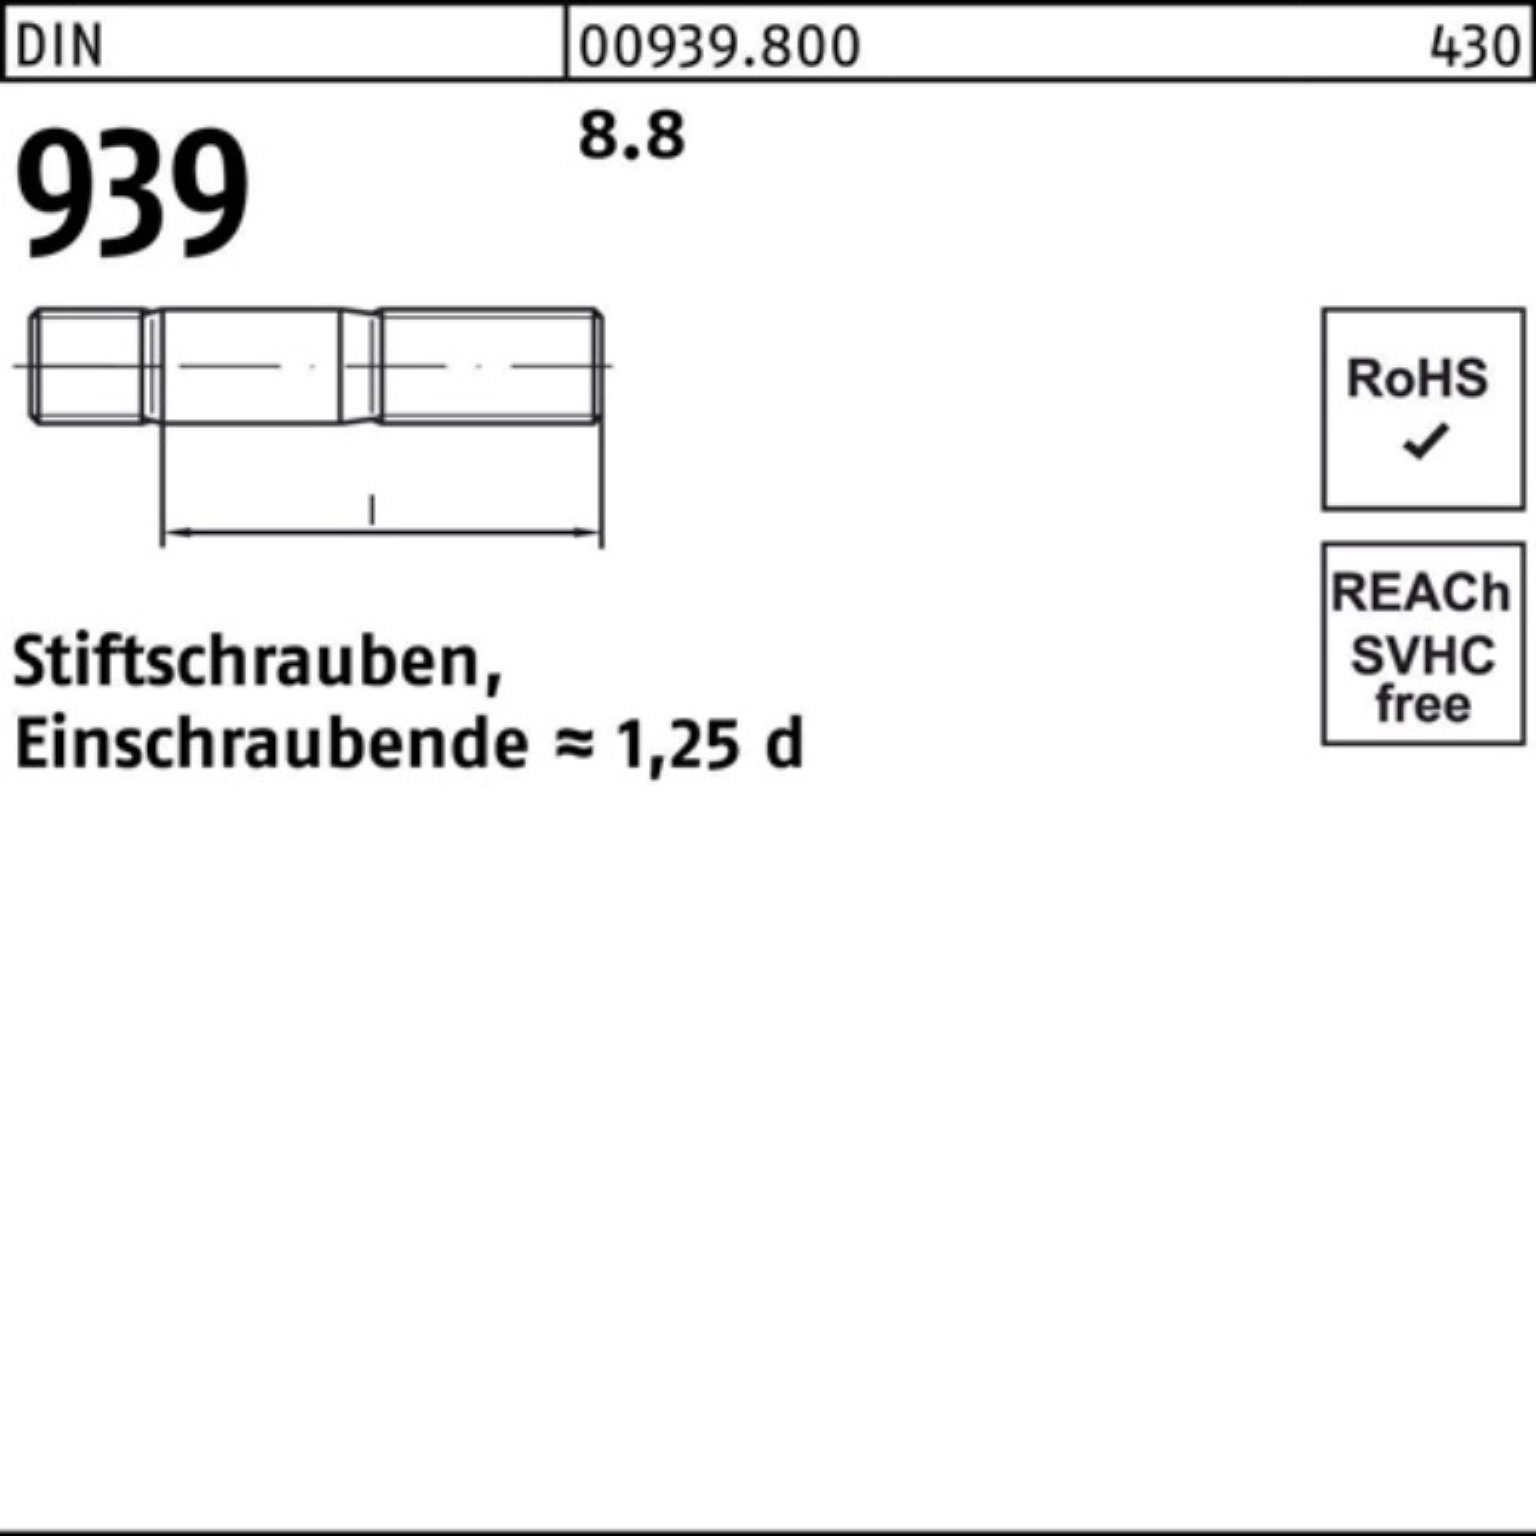 Reyher Stiftschraube 100er 939 Pack 95 Stiftschraube 8.8 S 10 Einschraubende=1,25d DIN M16x